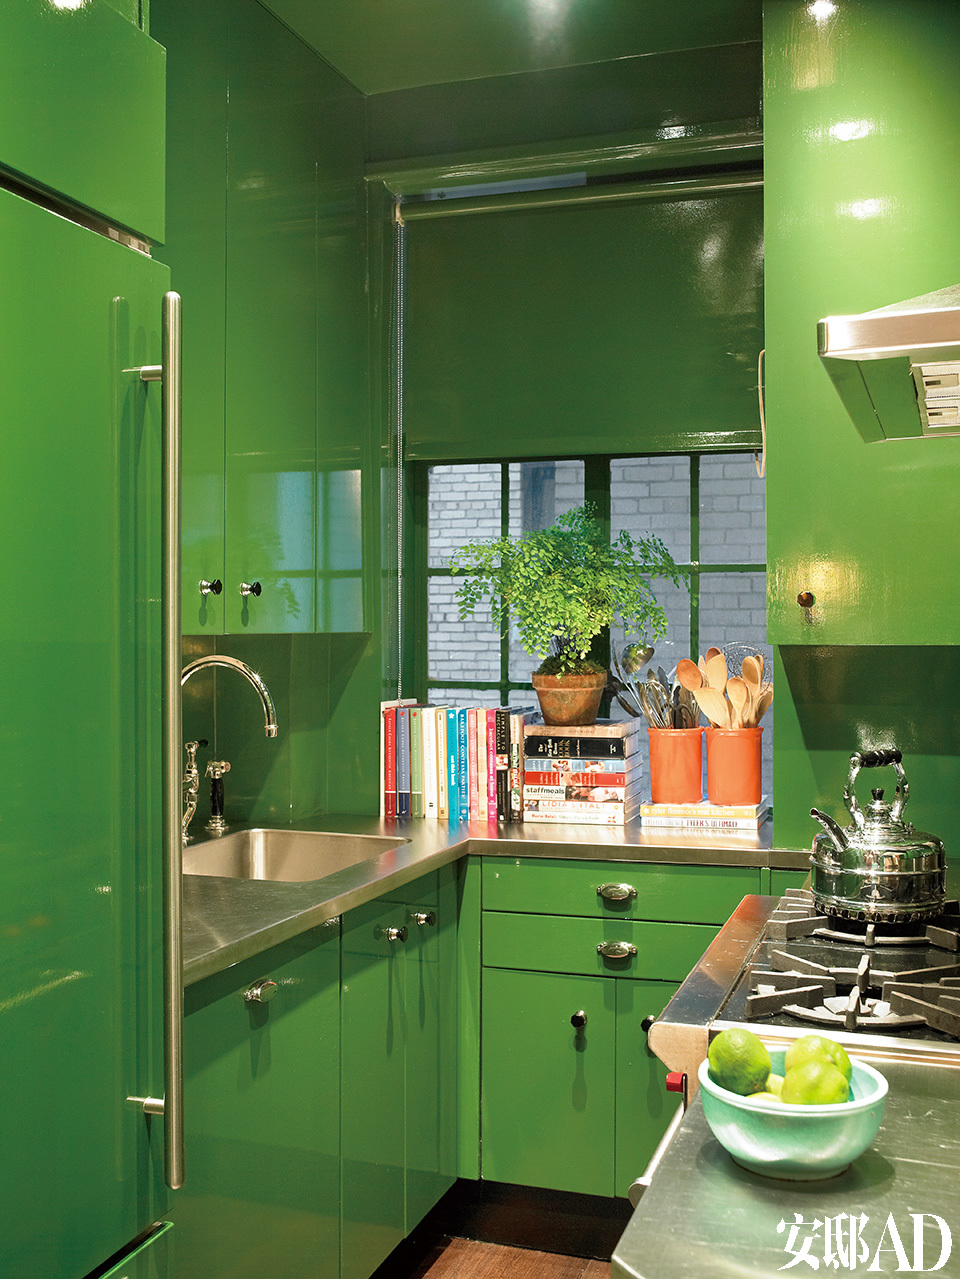 雷德将橱柜换成了苹果绿色。虽然这个小厨房间就像是餐 具间一样，但是以防万一还是具有齐全的厨房功能。原先的房东是一对德国夫妻， 对厨房里的每样事物都考虑得井井有条。因此， 设计师只是将橱柜涂成苹果绿色， 把几个线条改成直线。